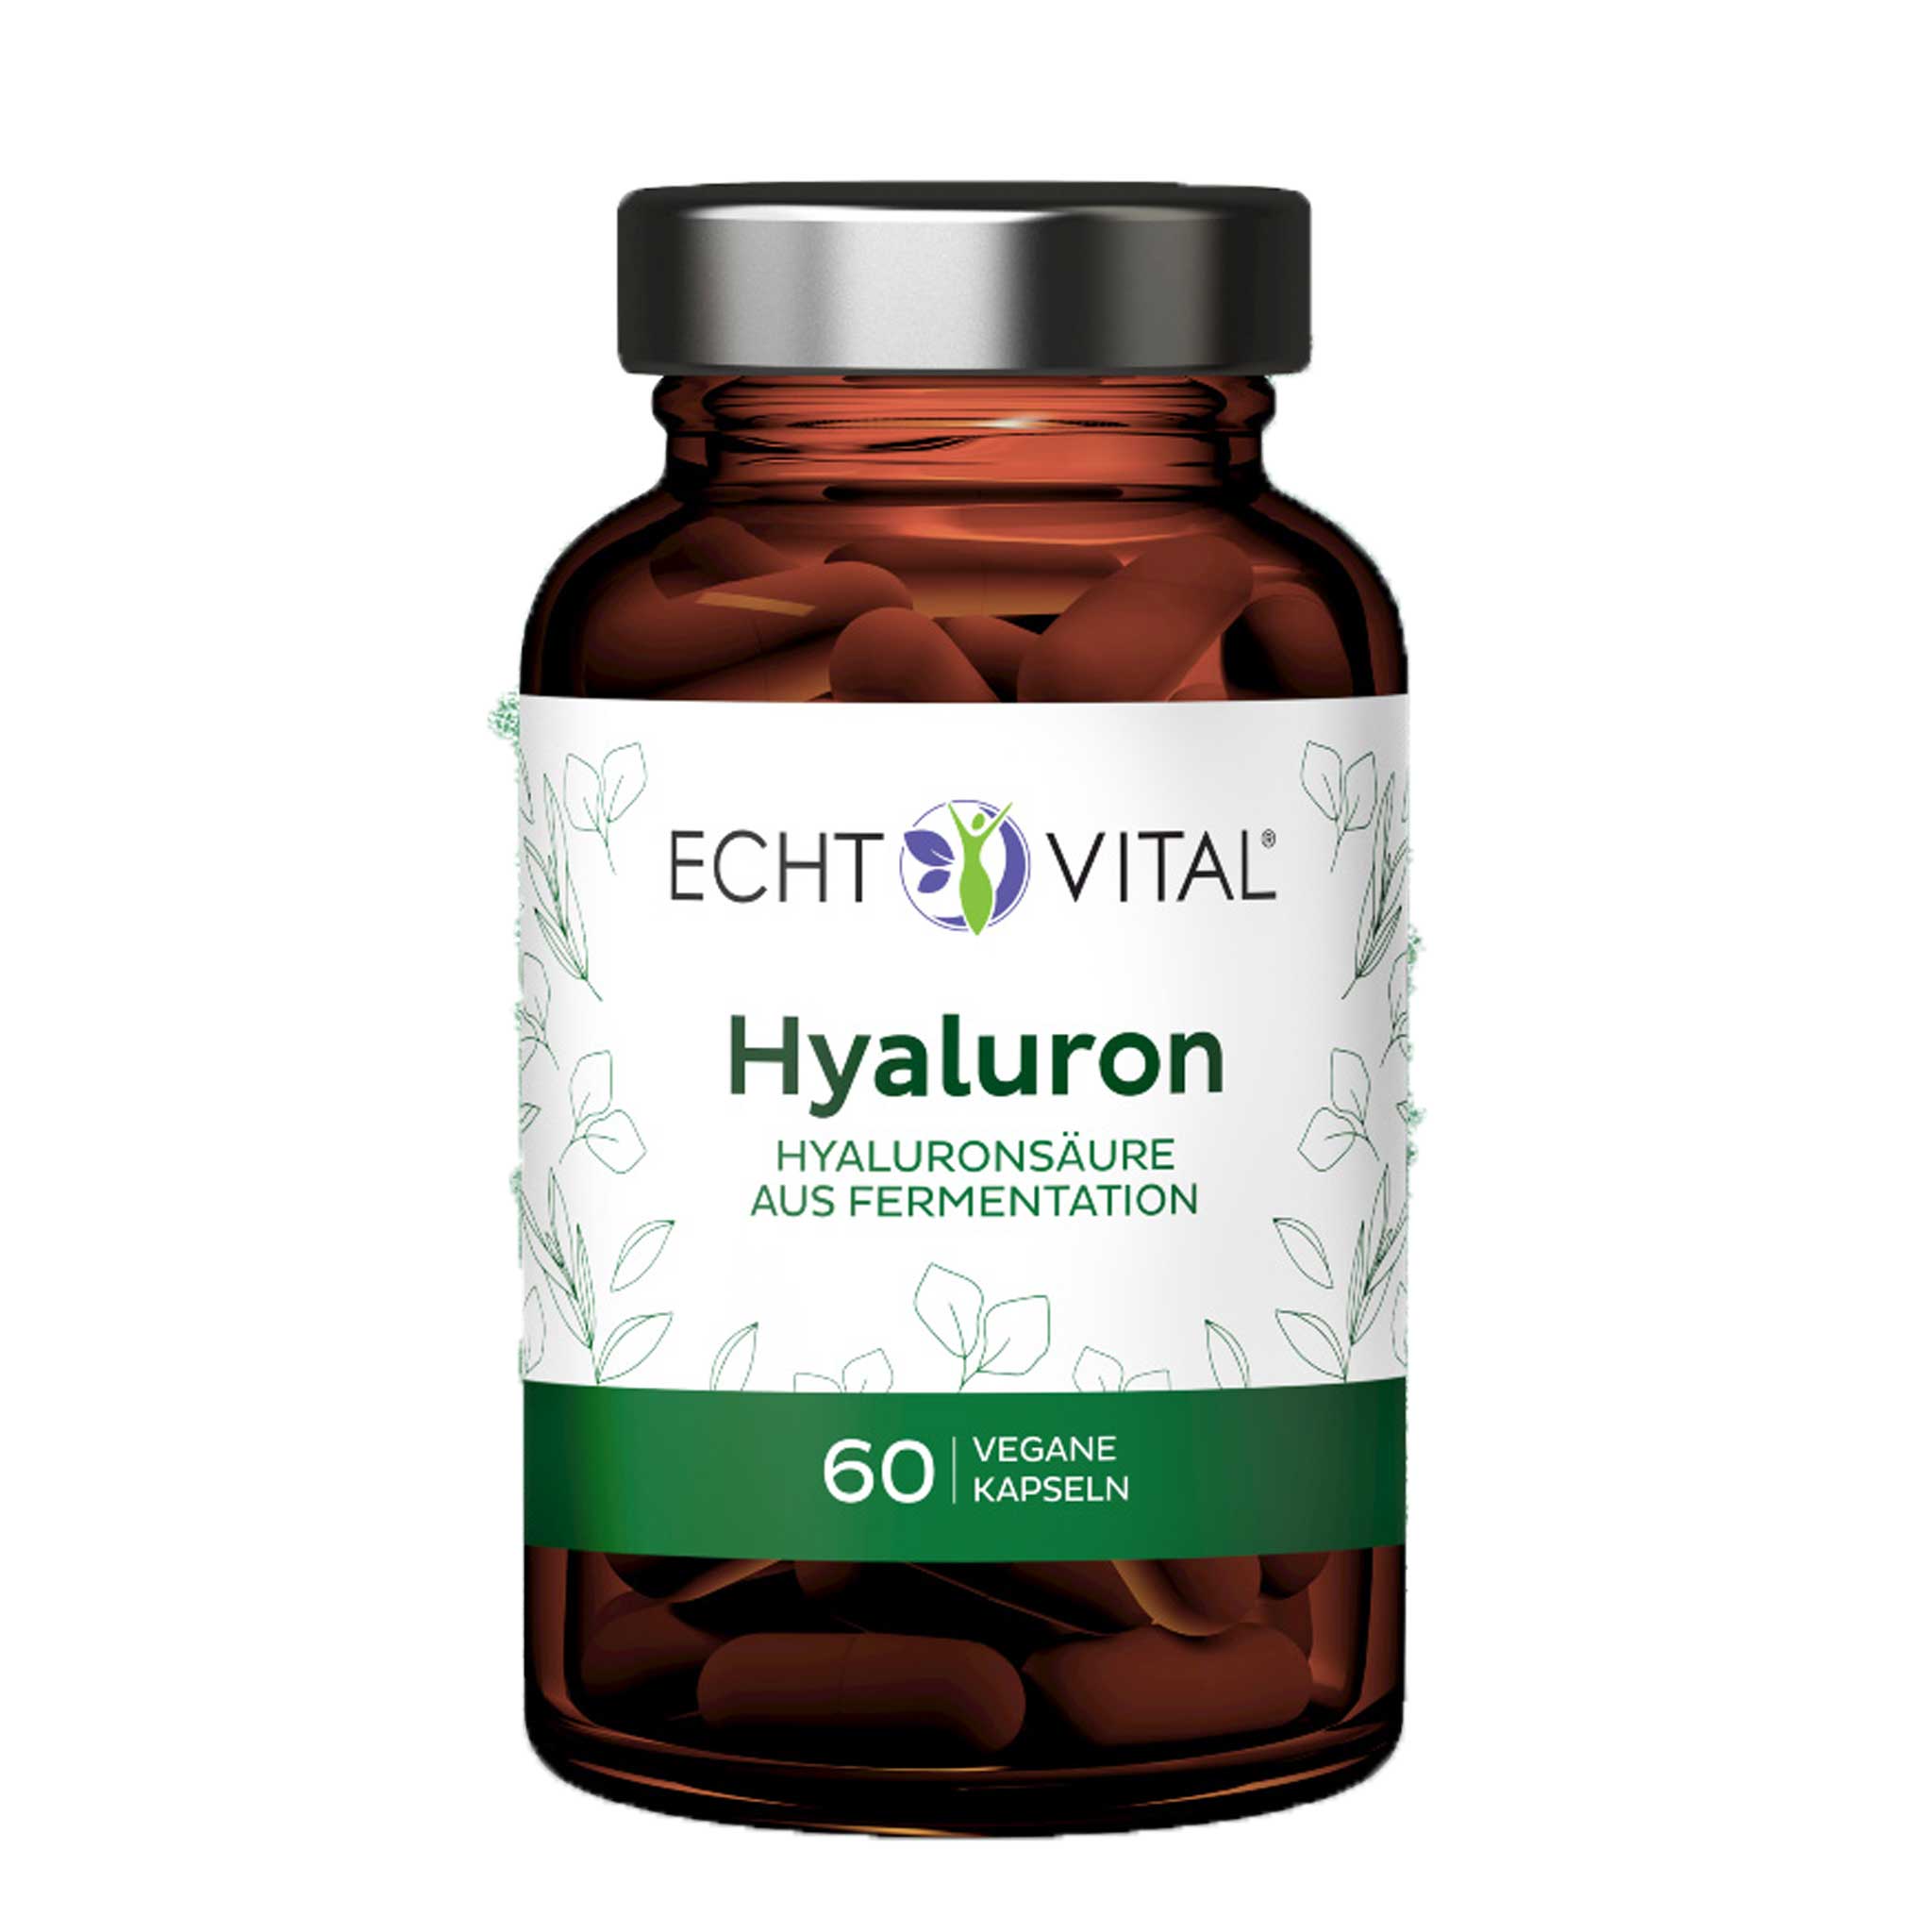 Hyaluron aus Fermentation von Echt Vital beinhaltet 60 vegane Kapseln